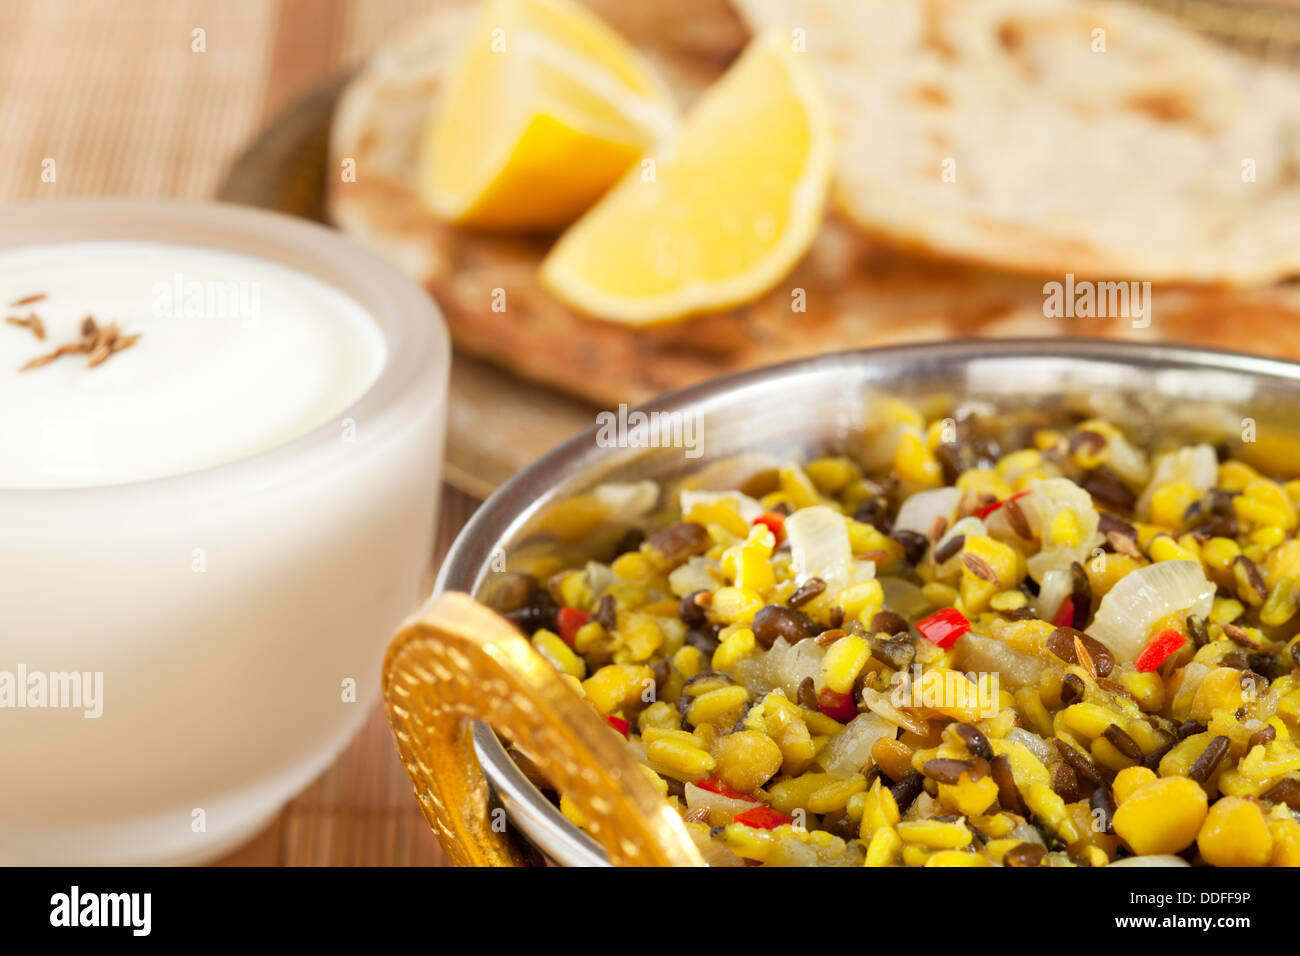 Dhal indische vegetarische Kost - eine Schüssel indische Dhal oder dal aus Channa dal und Urid Dhal mit Naan-Brot und Joghurt hergestellt. Stockfoto